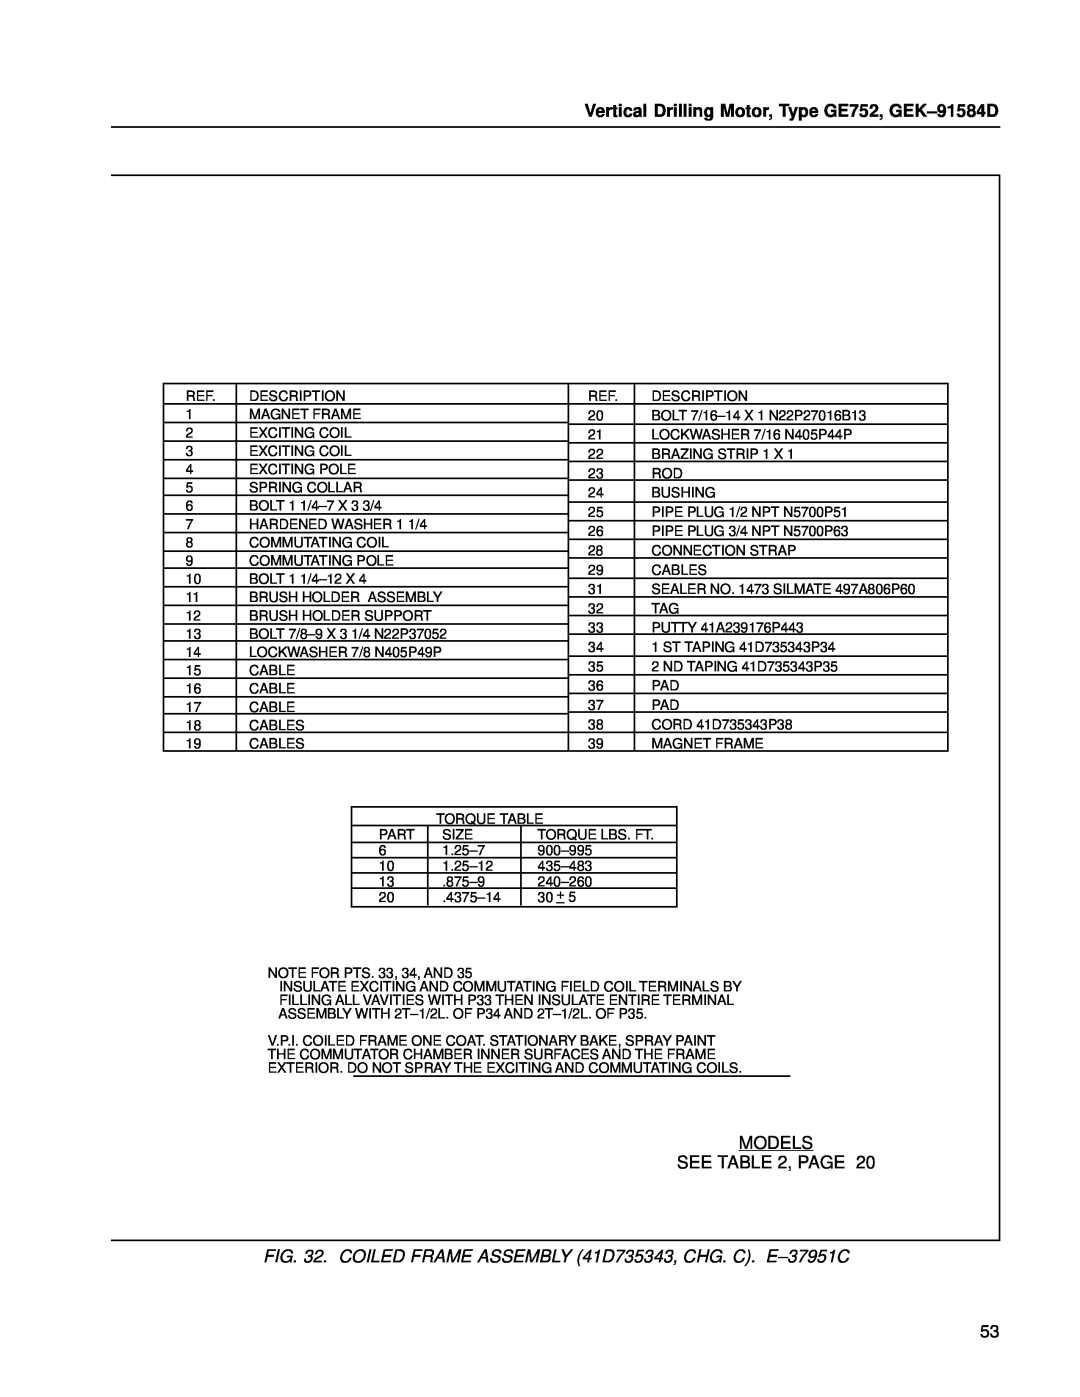 GE manual Vertical Drilling Motor, Type GE752, GEK±91584D, Models See , Page 